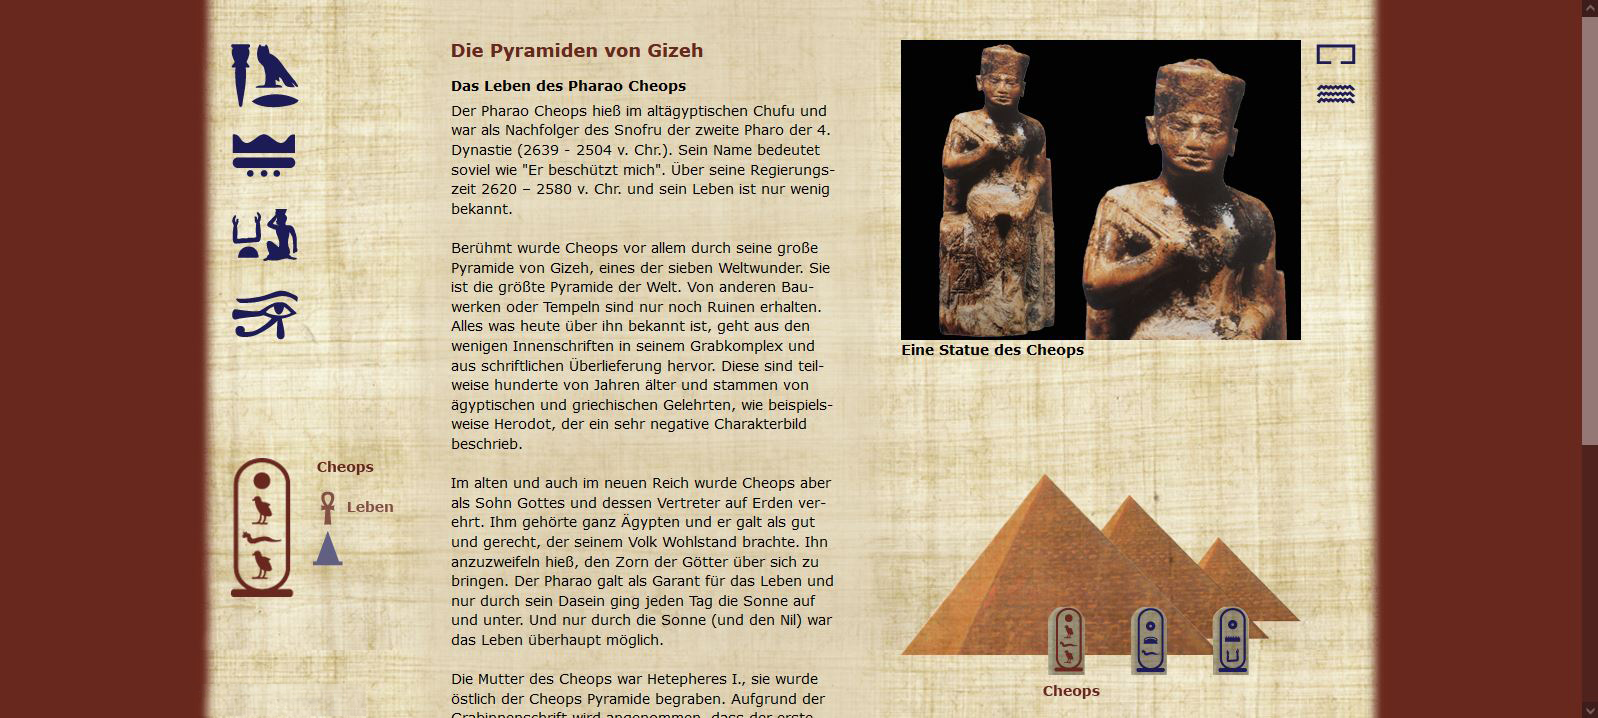 Die Pyramiden von Gizeh - Cheops - Leben